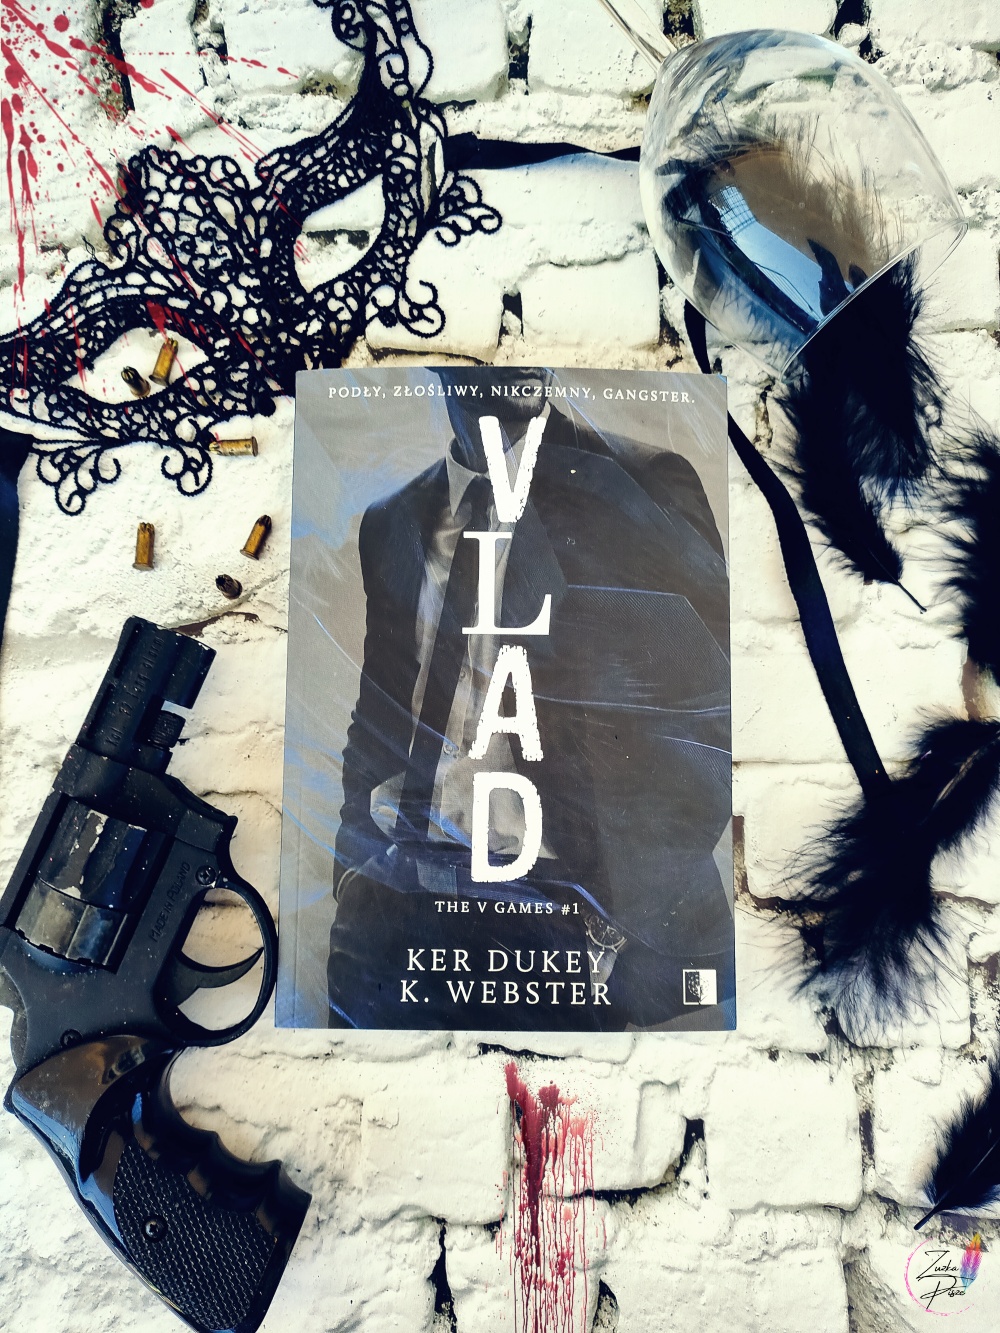 Ker Dukey & K.Webster "Vlad" - patronacka recenzja książki